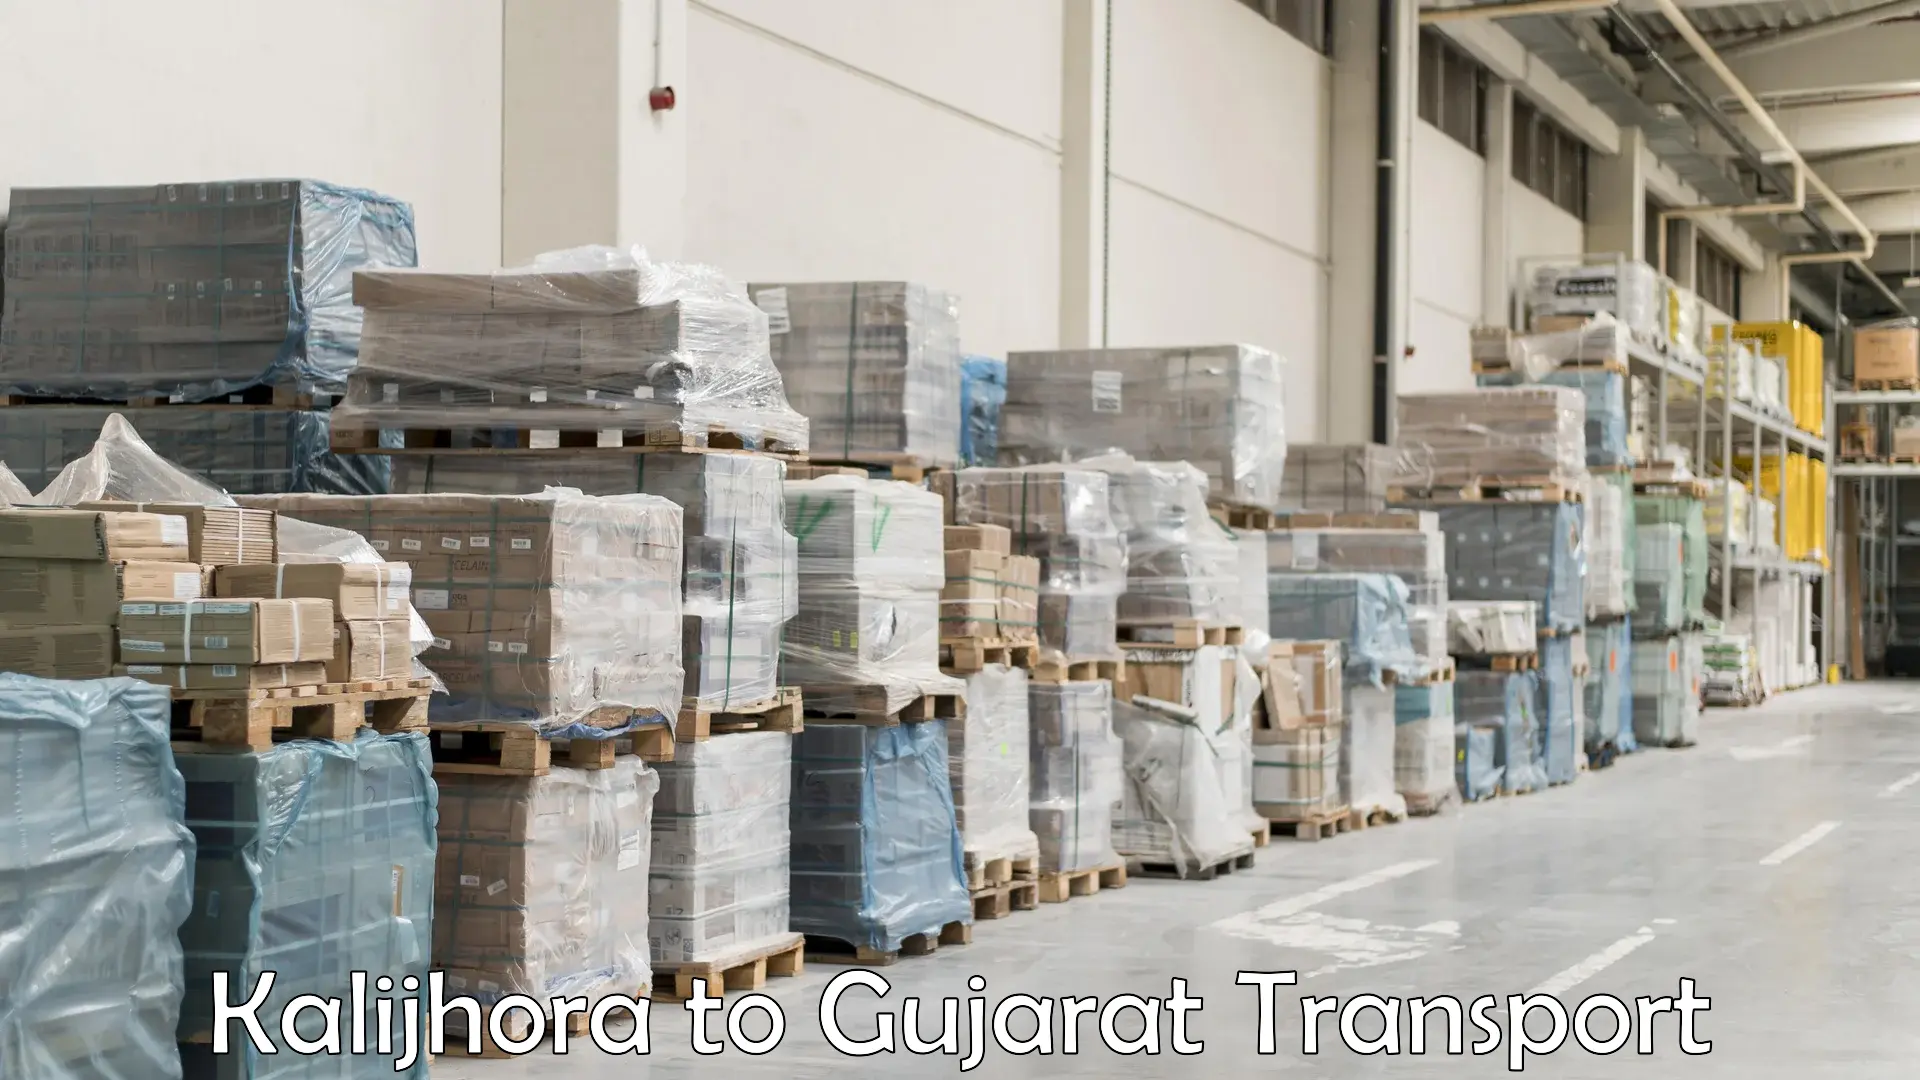 Lorry transport service Kalijhora to Gujarat